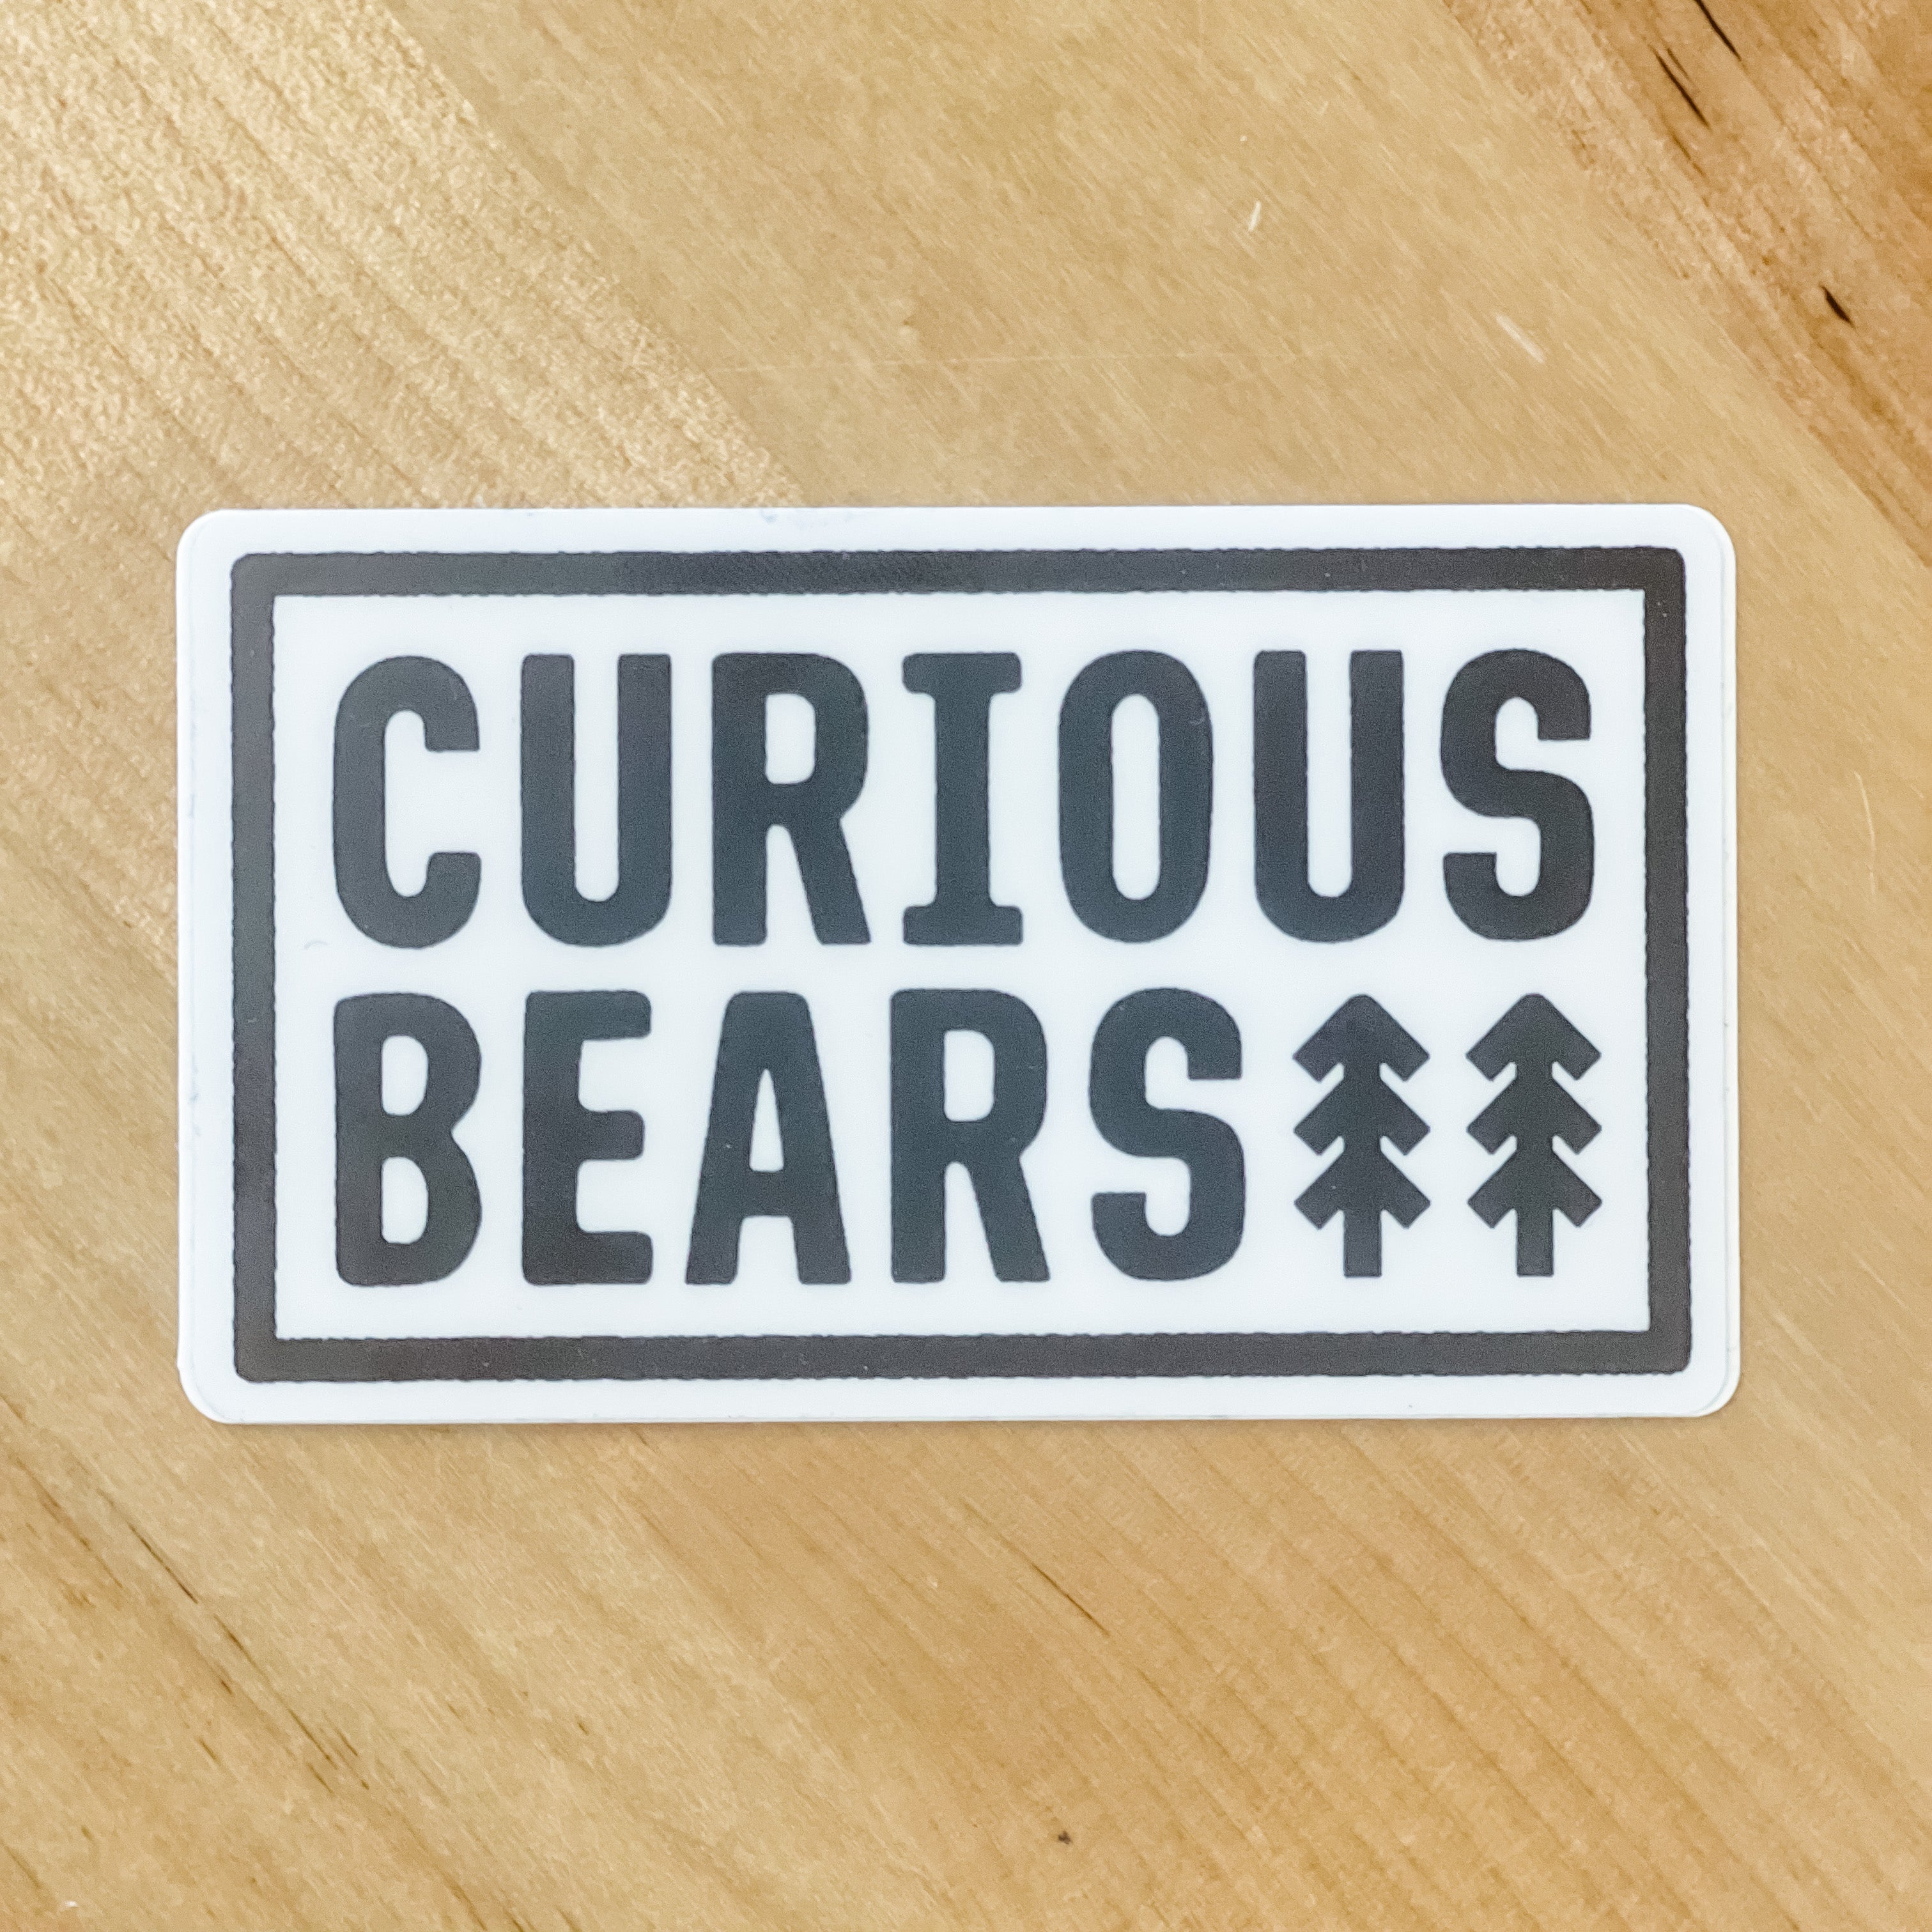 Curious Bears Sticker